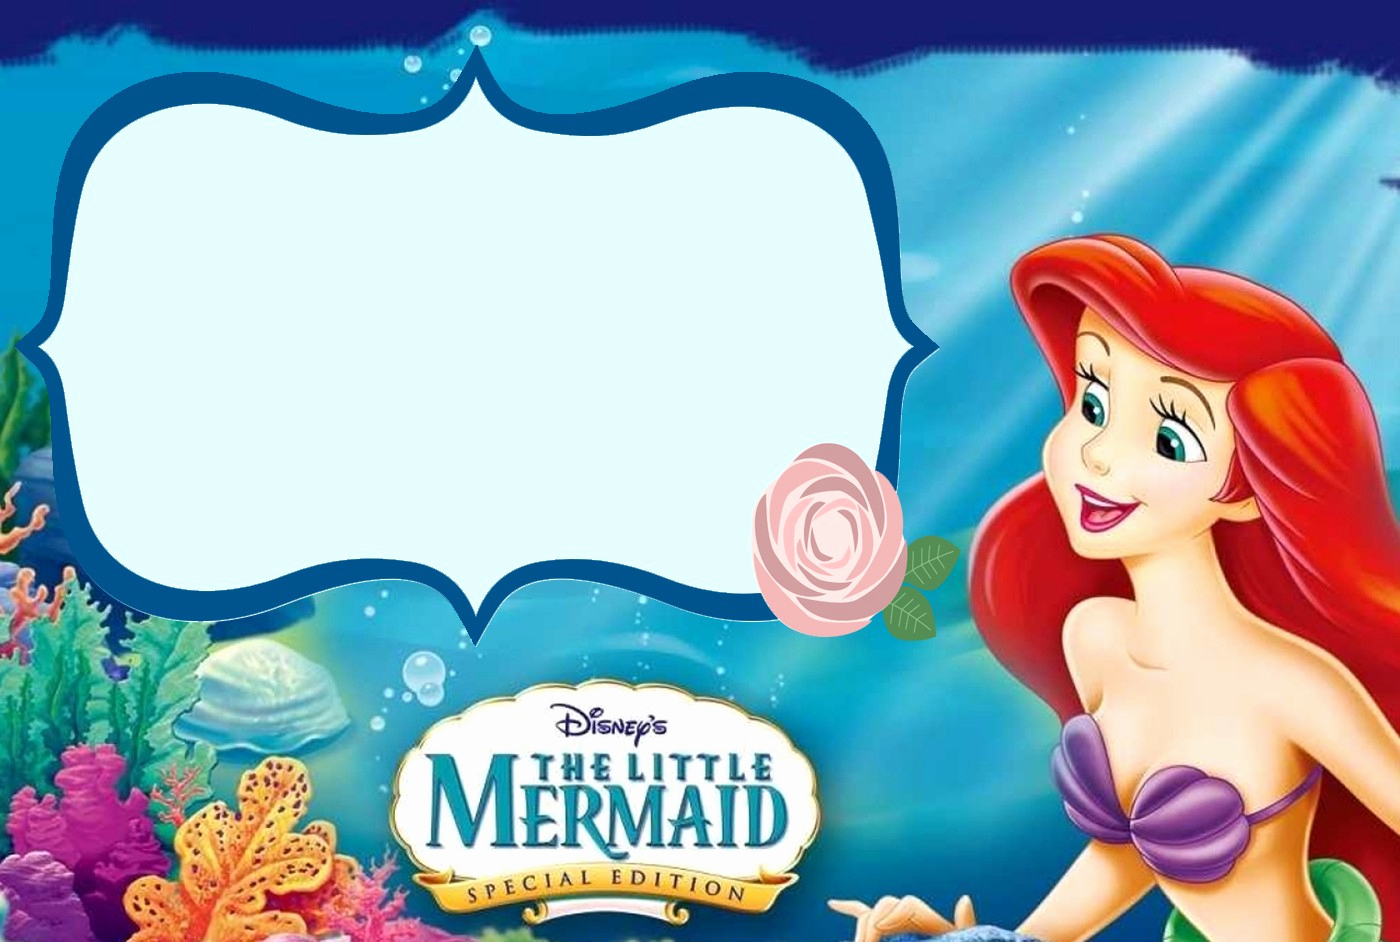 Free Little Mermaid Invitation Templates Best Of Little Mermaid Free Printable Invitation Templates